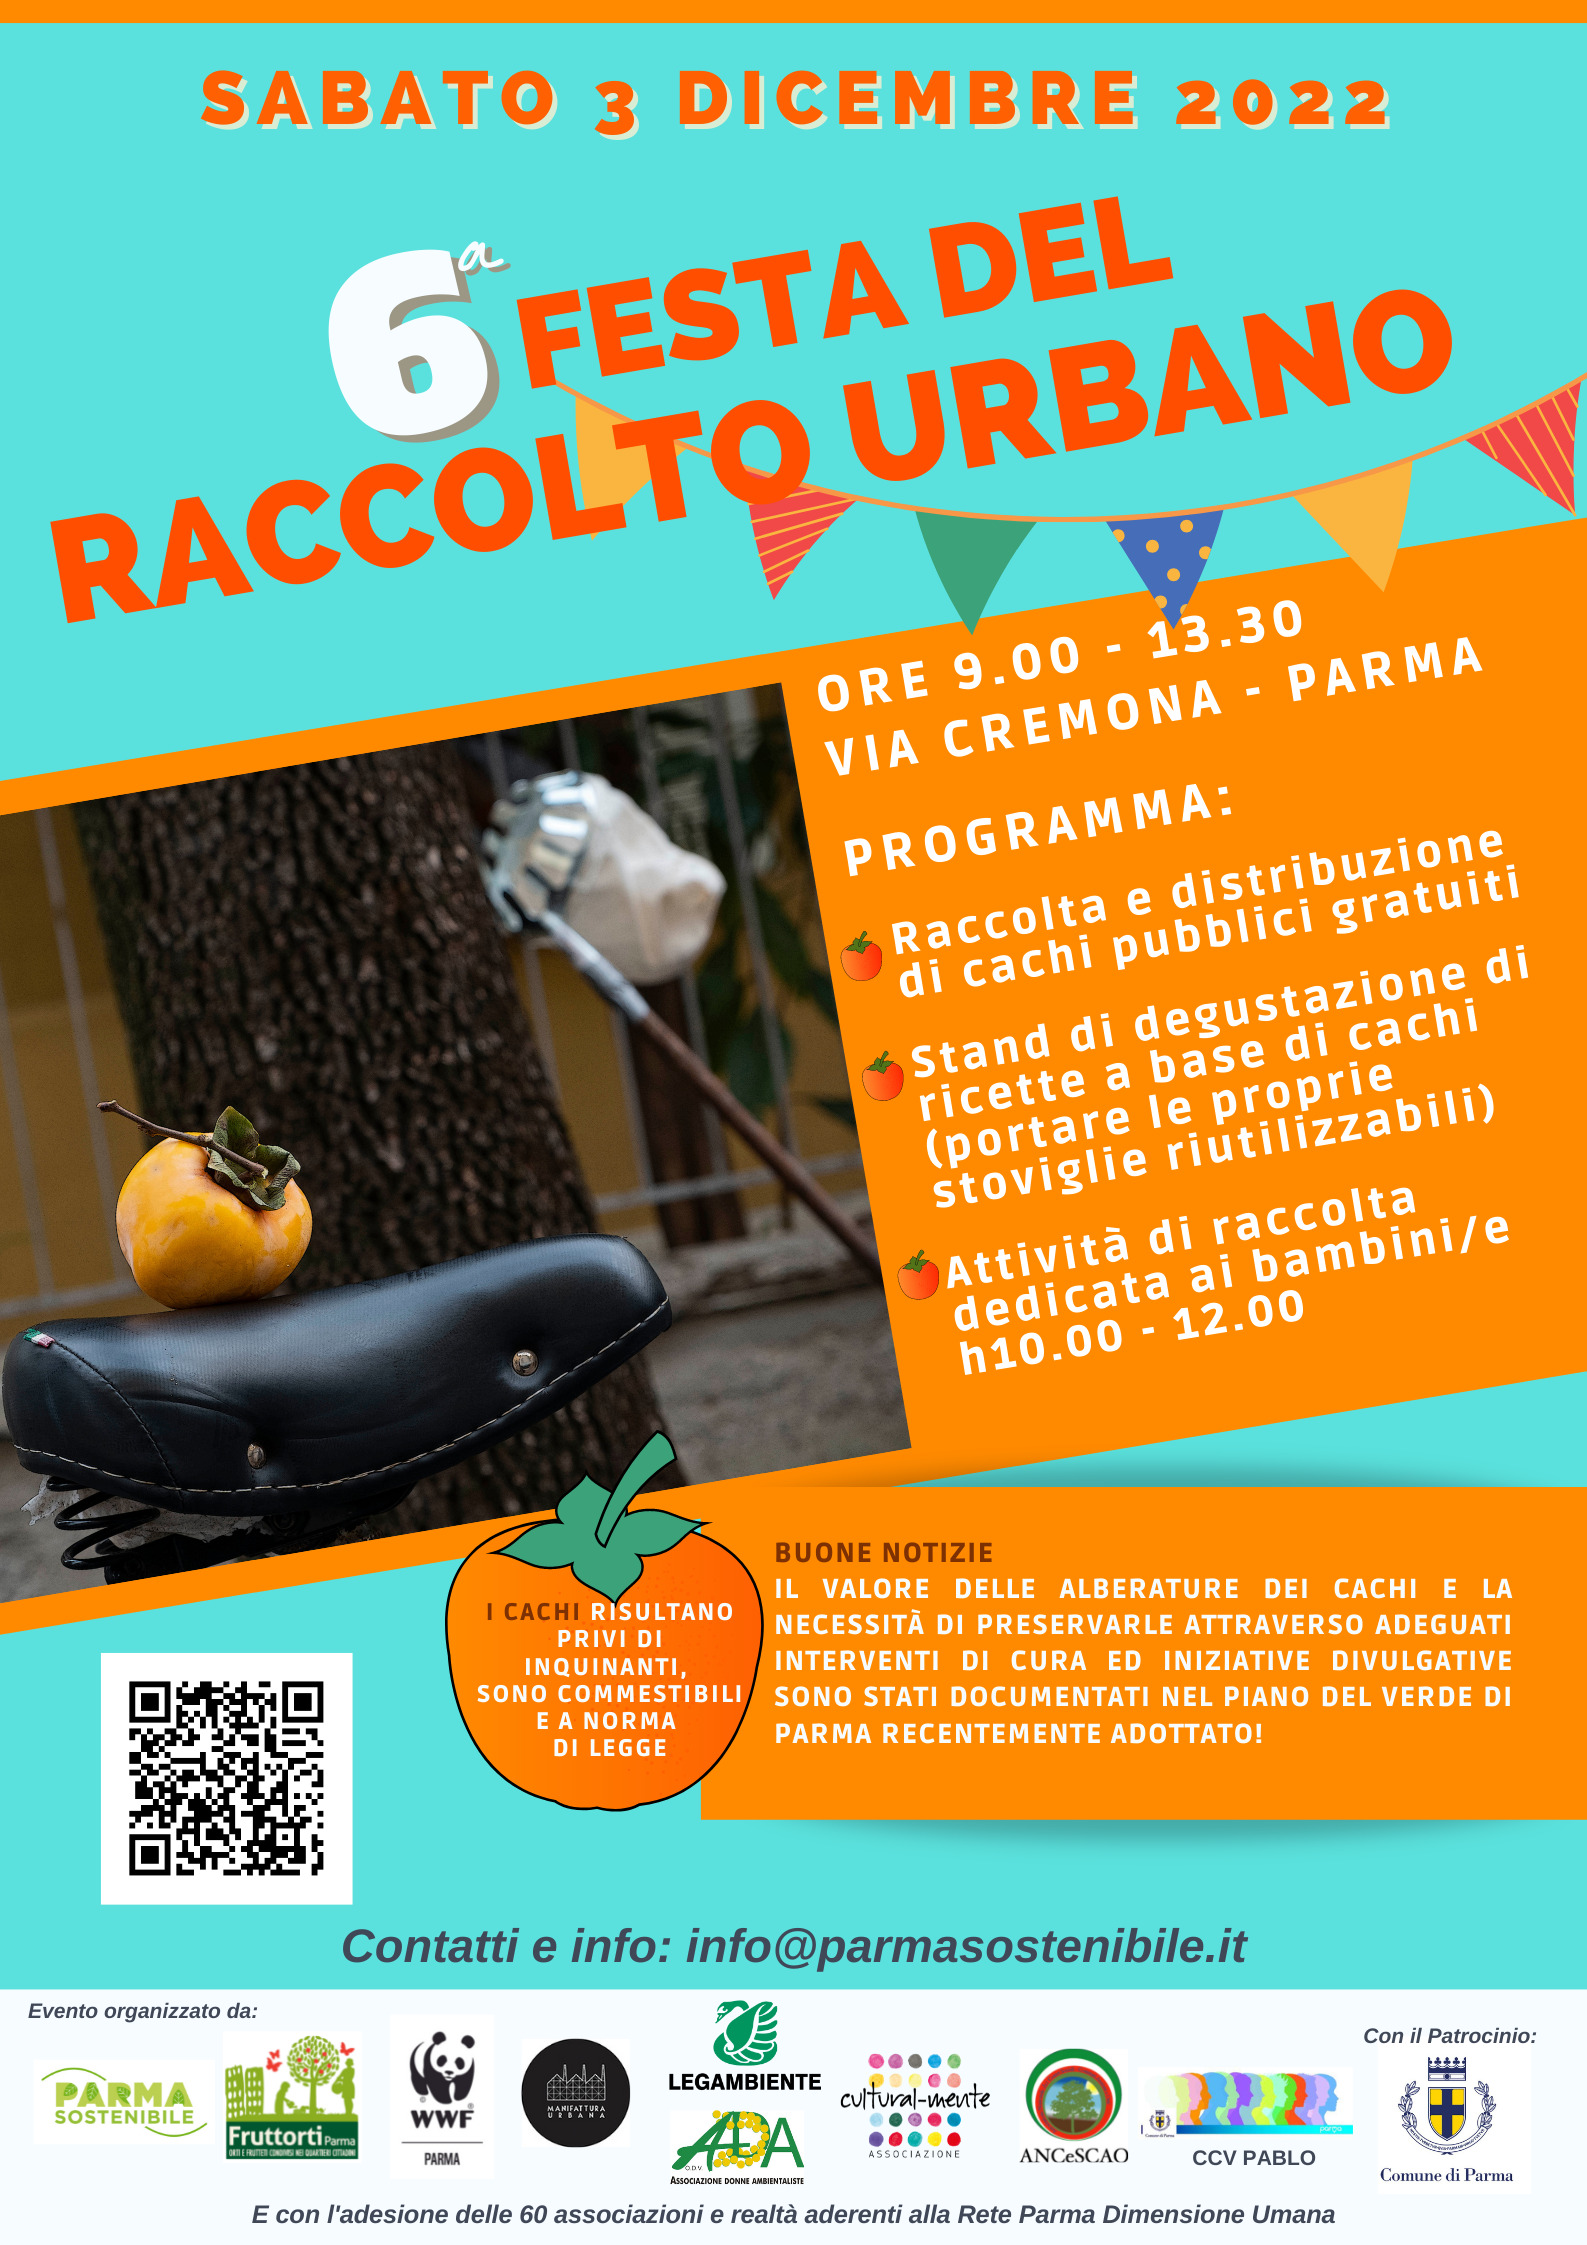 A Parma la Festa del Raccolto Urbano, 6^ edizione: un appuntamento aperto a tutta la cittadinanza in via Cremona